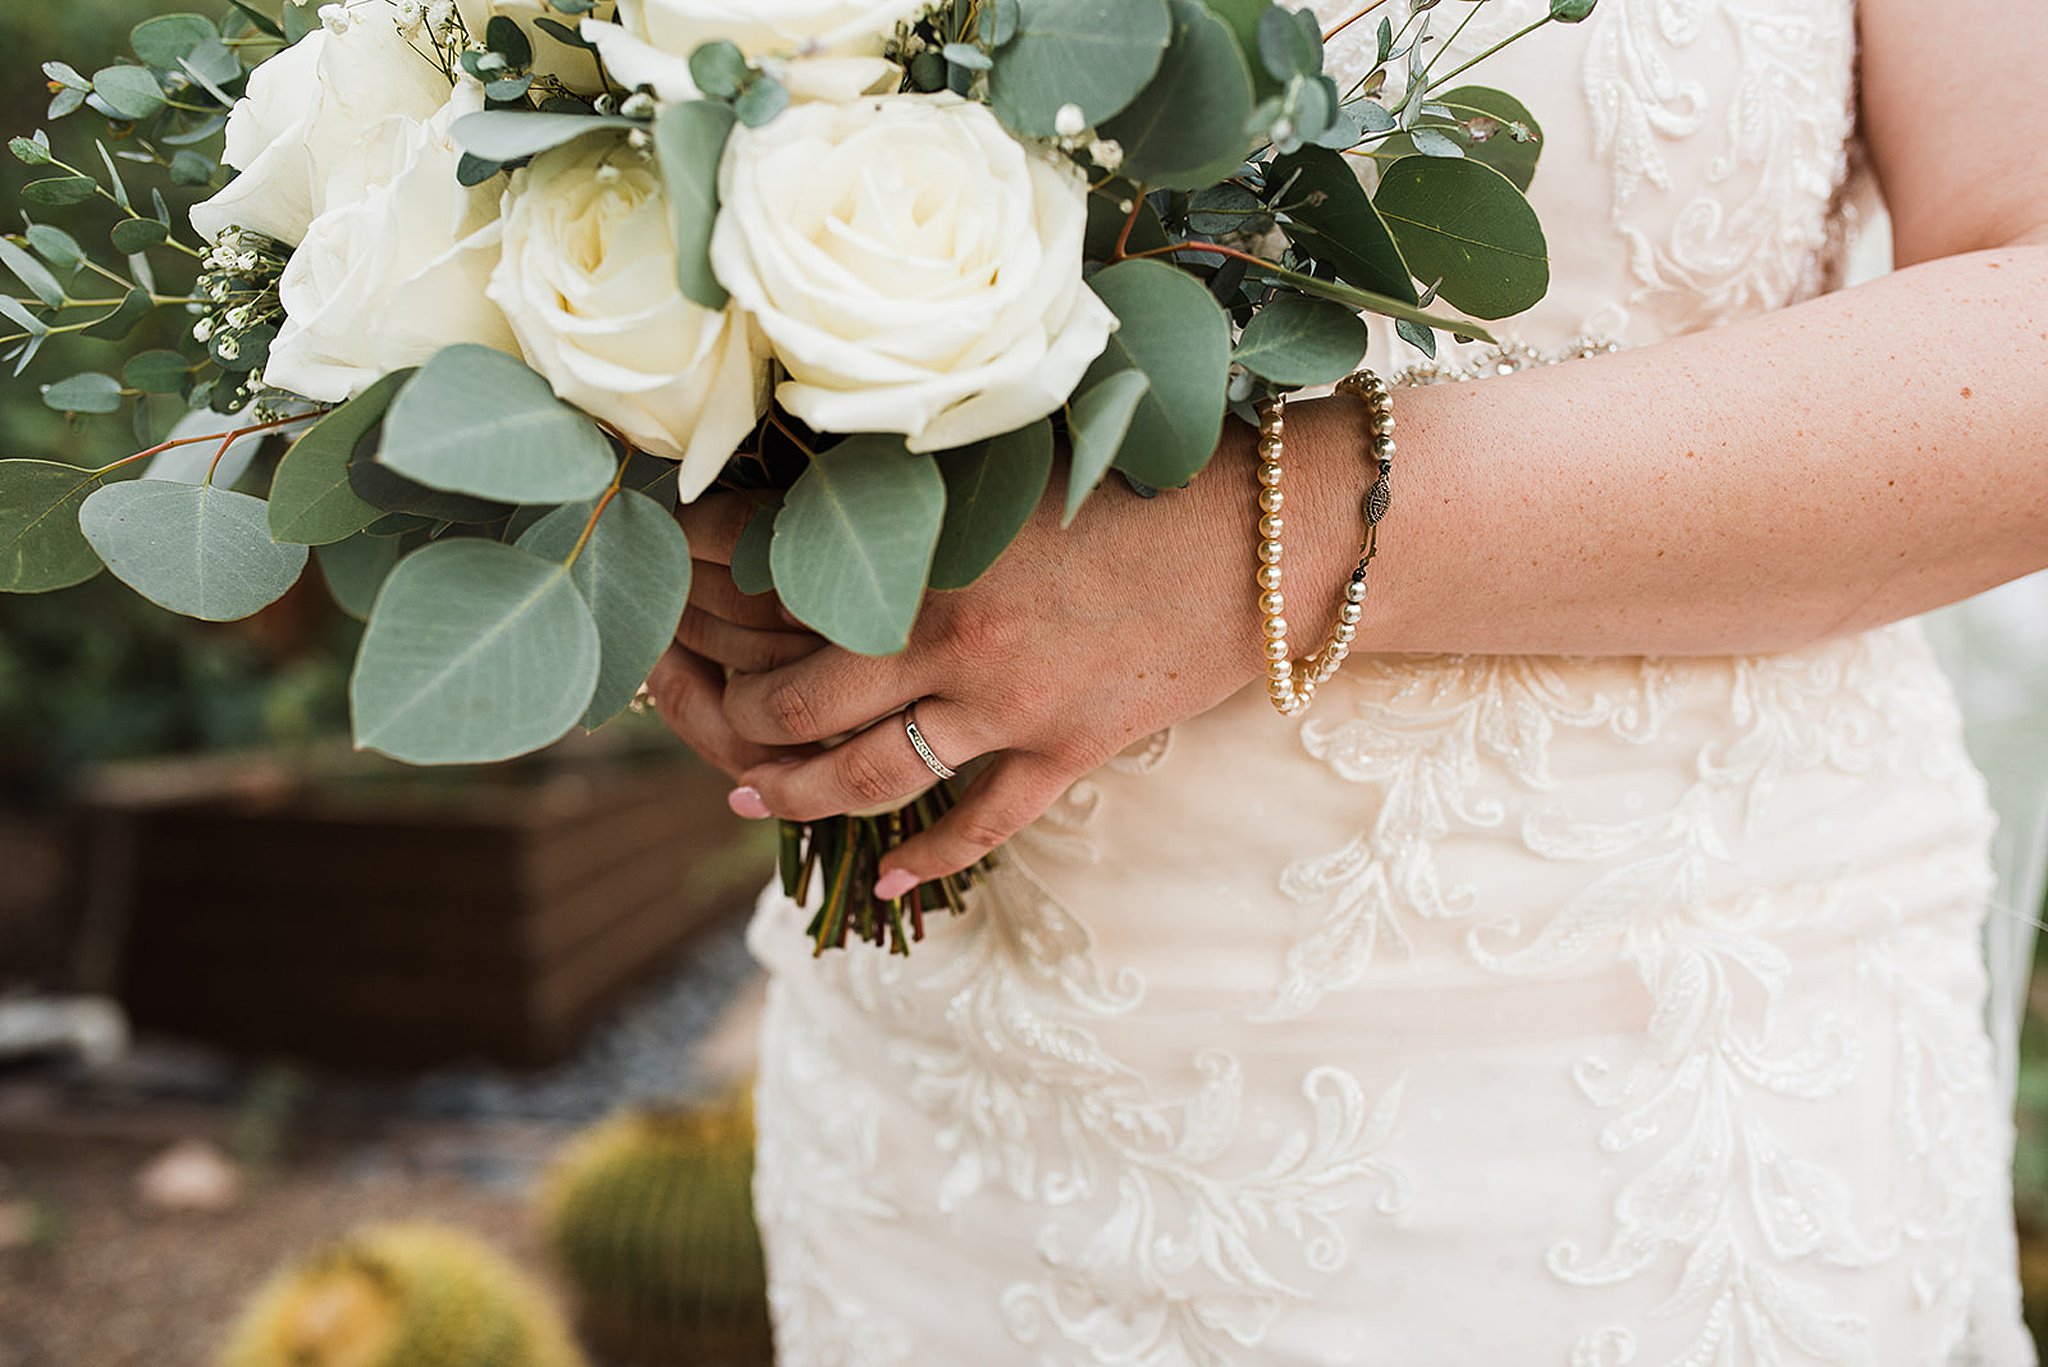 details of a bride's bouquet